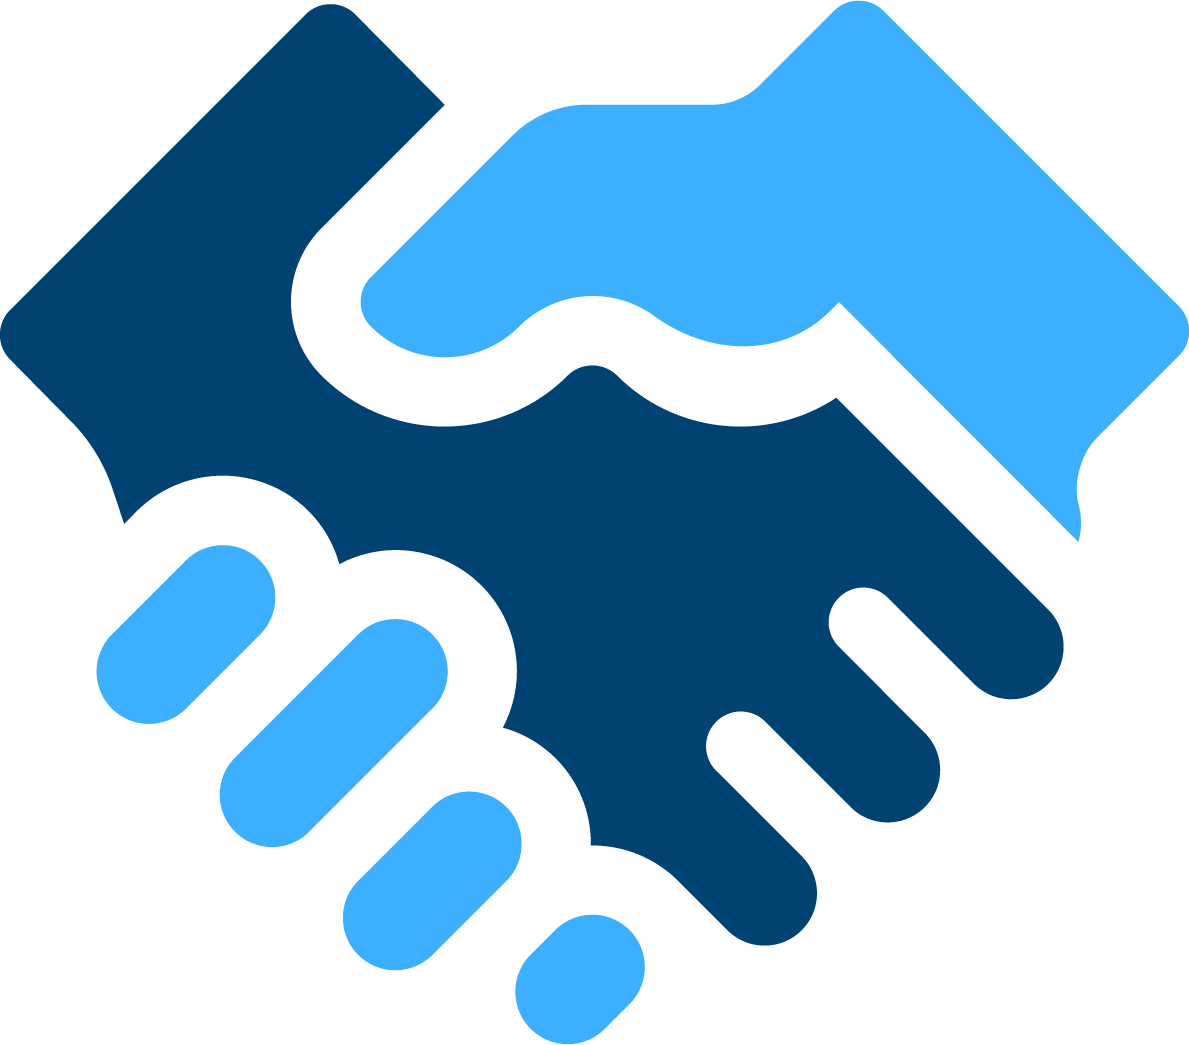 Partnerships handshake